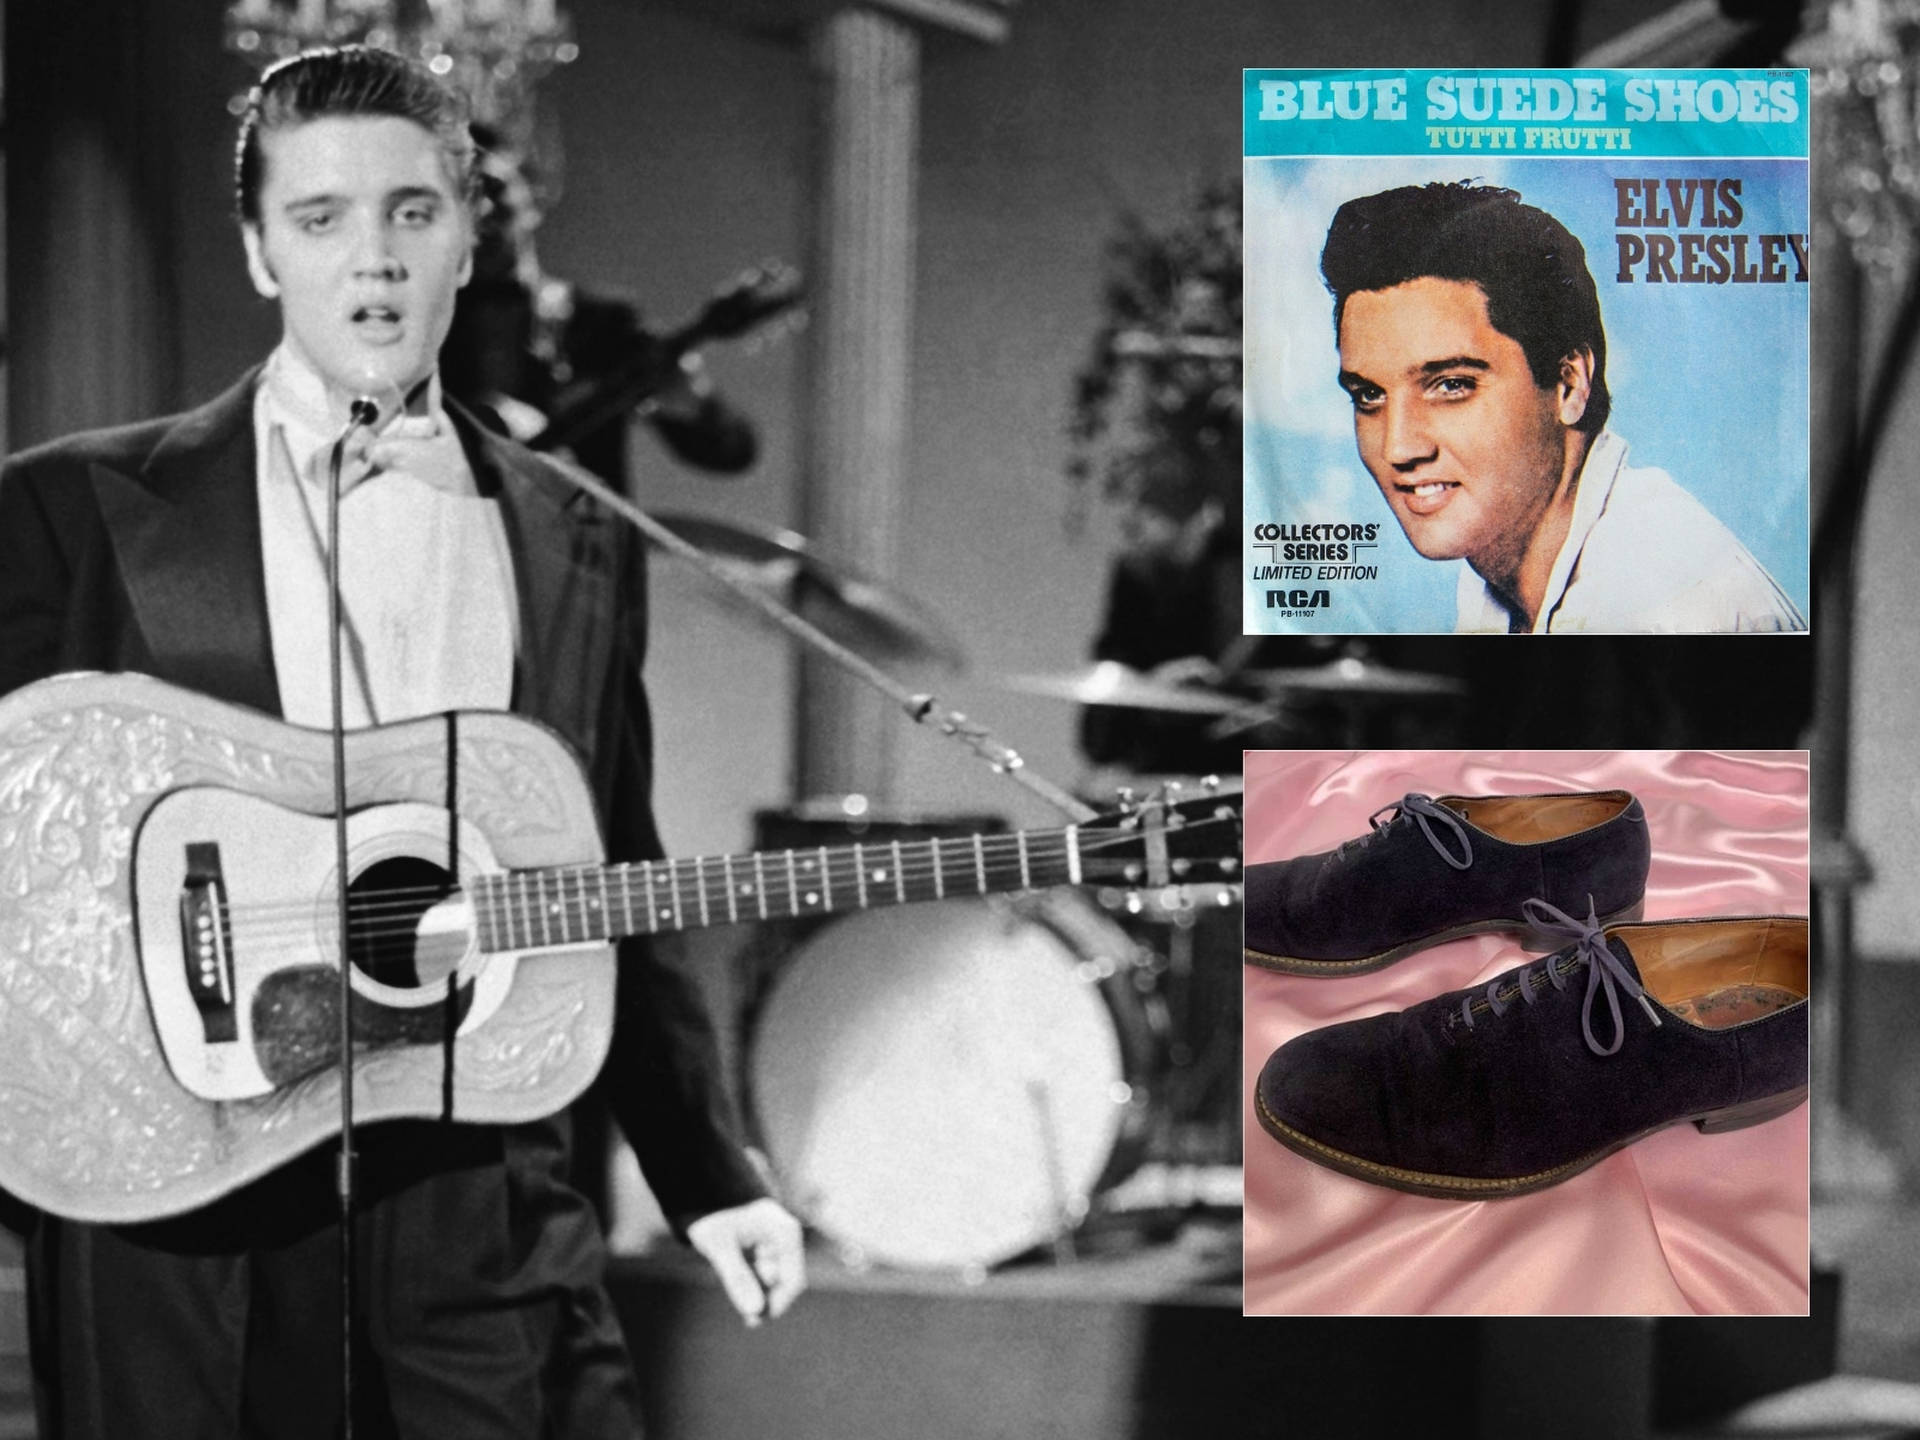 Đôi giày gắn bó với Elvis Presley trong những năm đầu sự nghiệp được bán đấu giá.